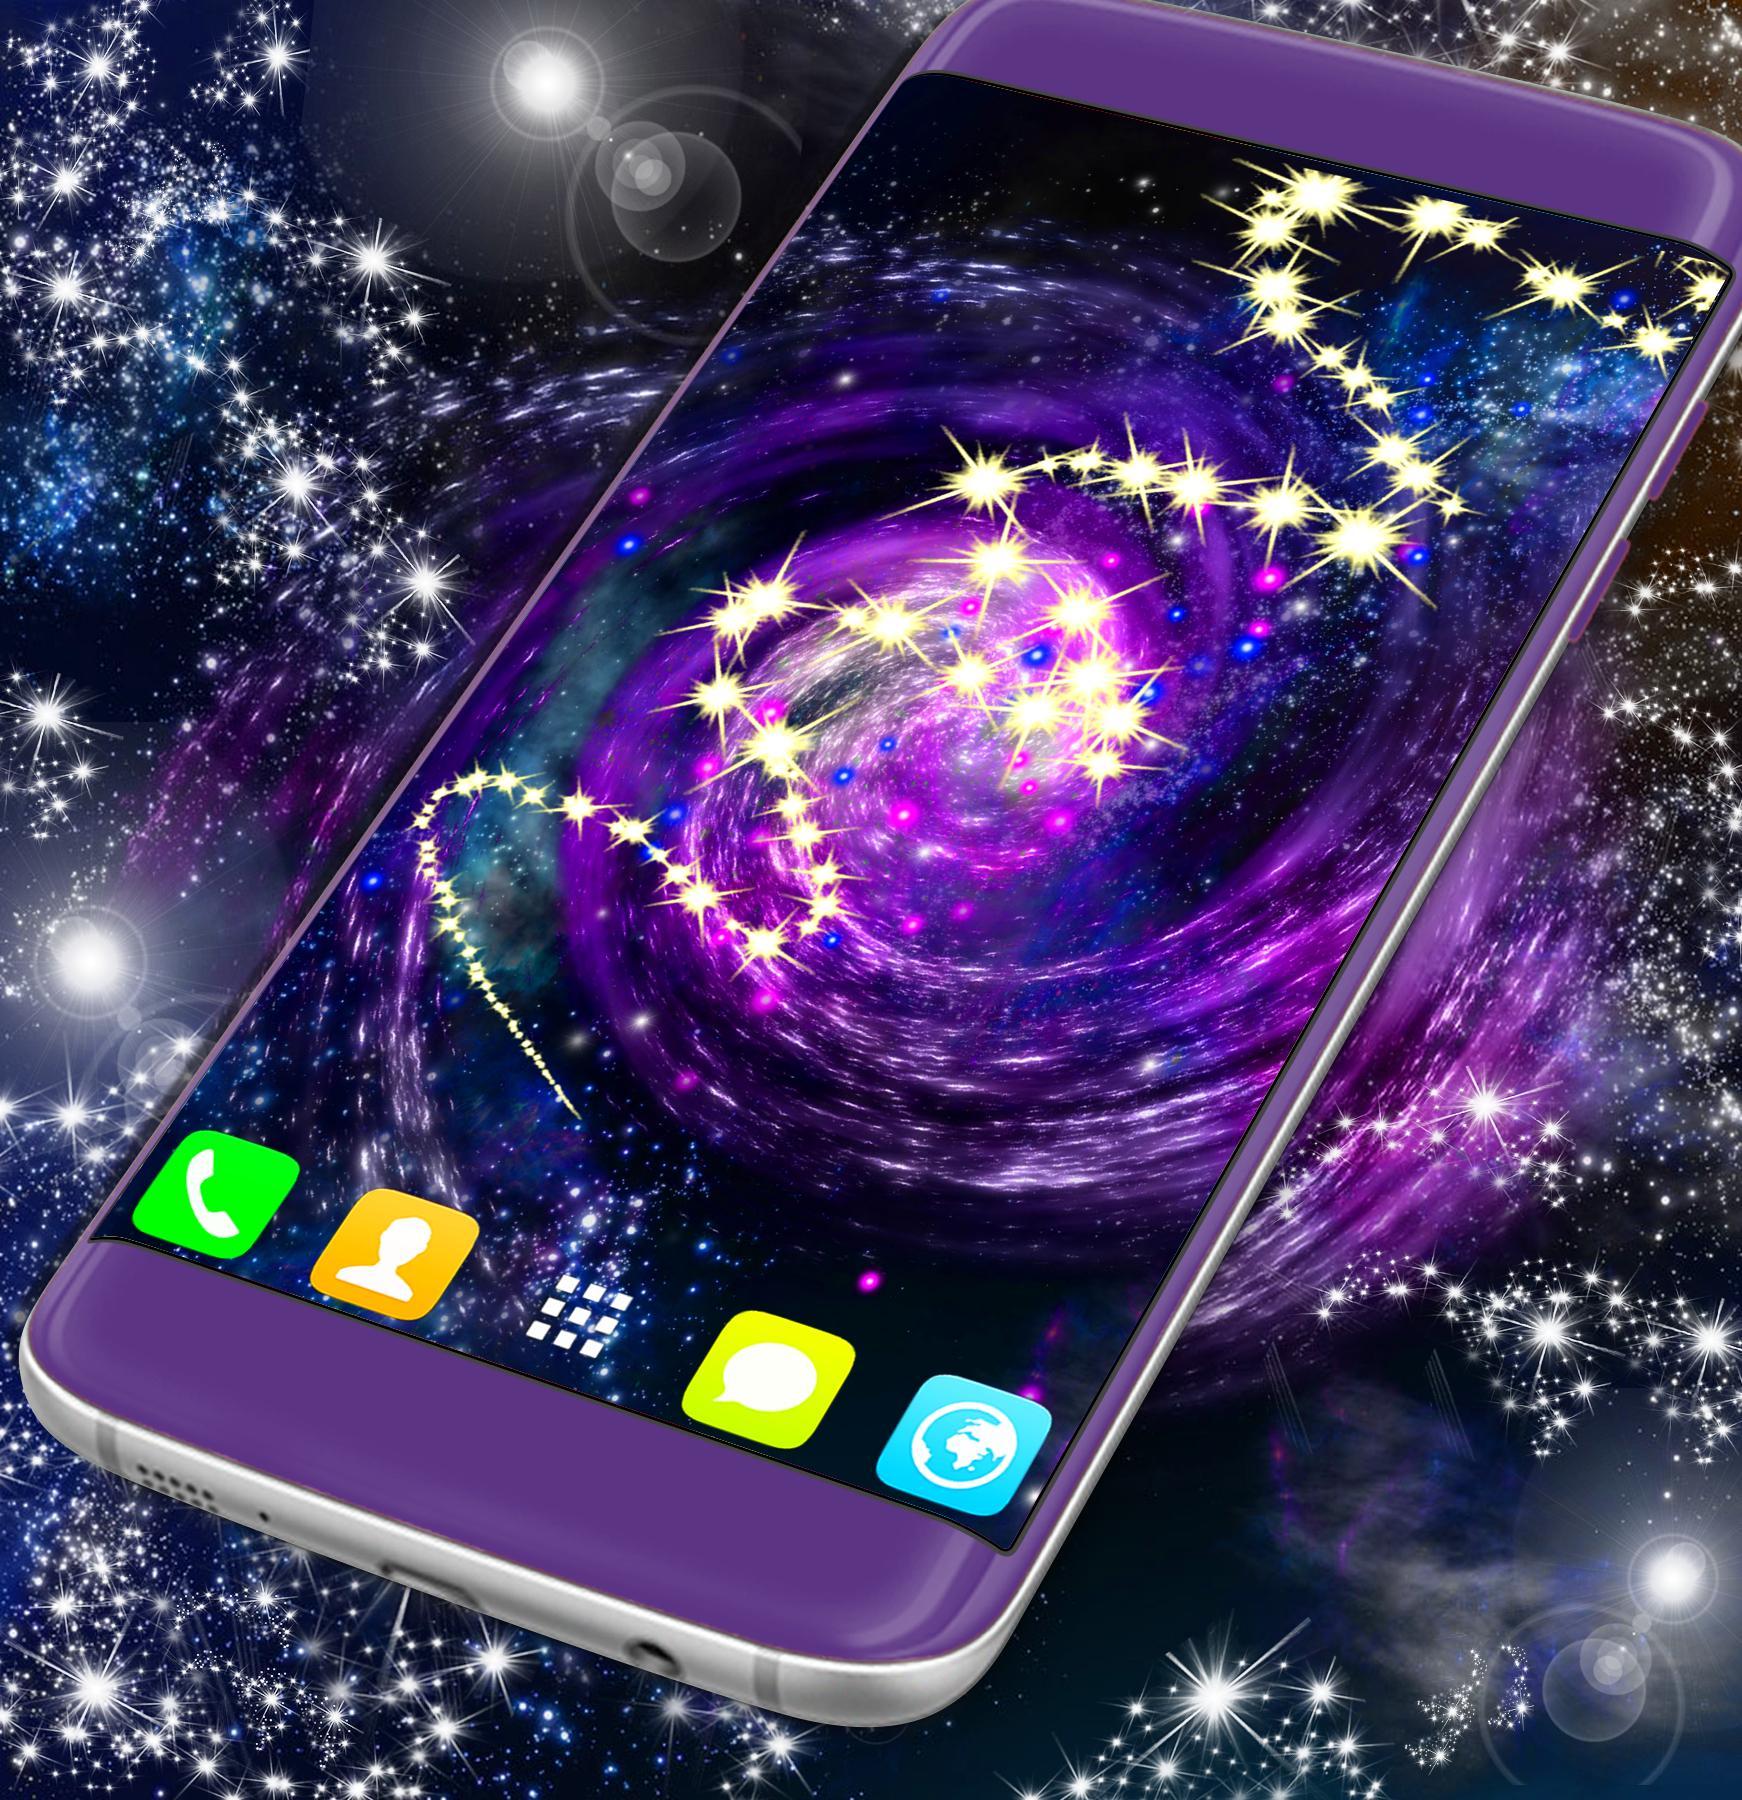 Galaxy обзор телефона. Галакси. Телефон Galaxy. Живая Галактика. Красивые заставки для телефона с галактикой.